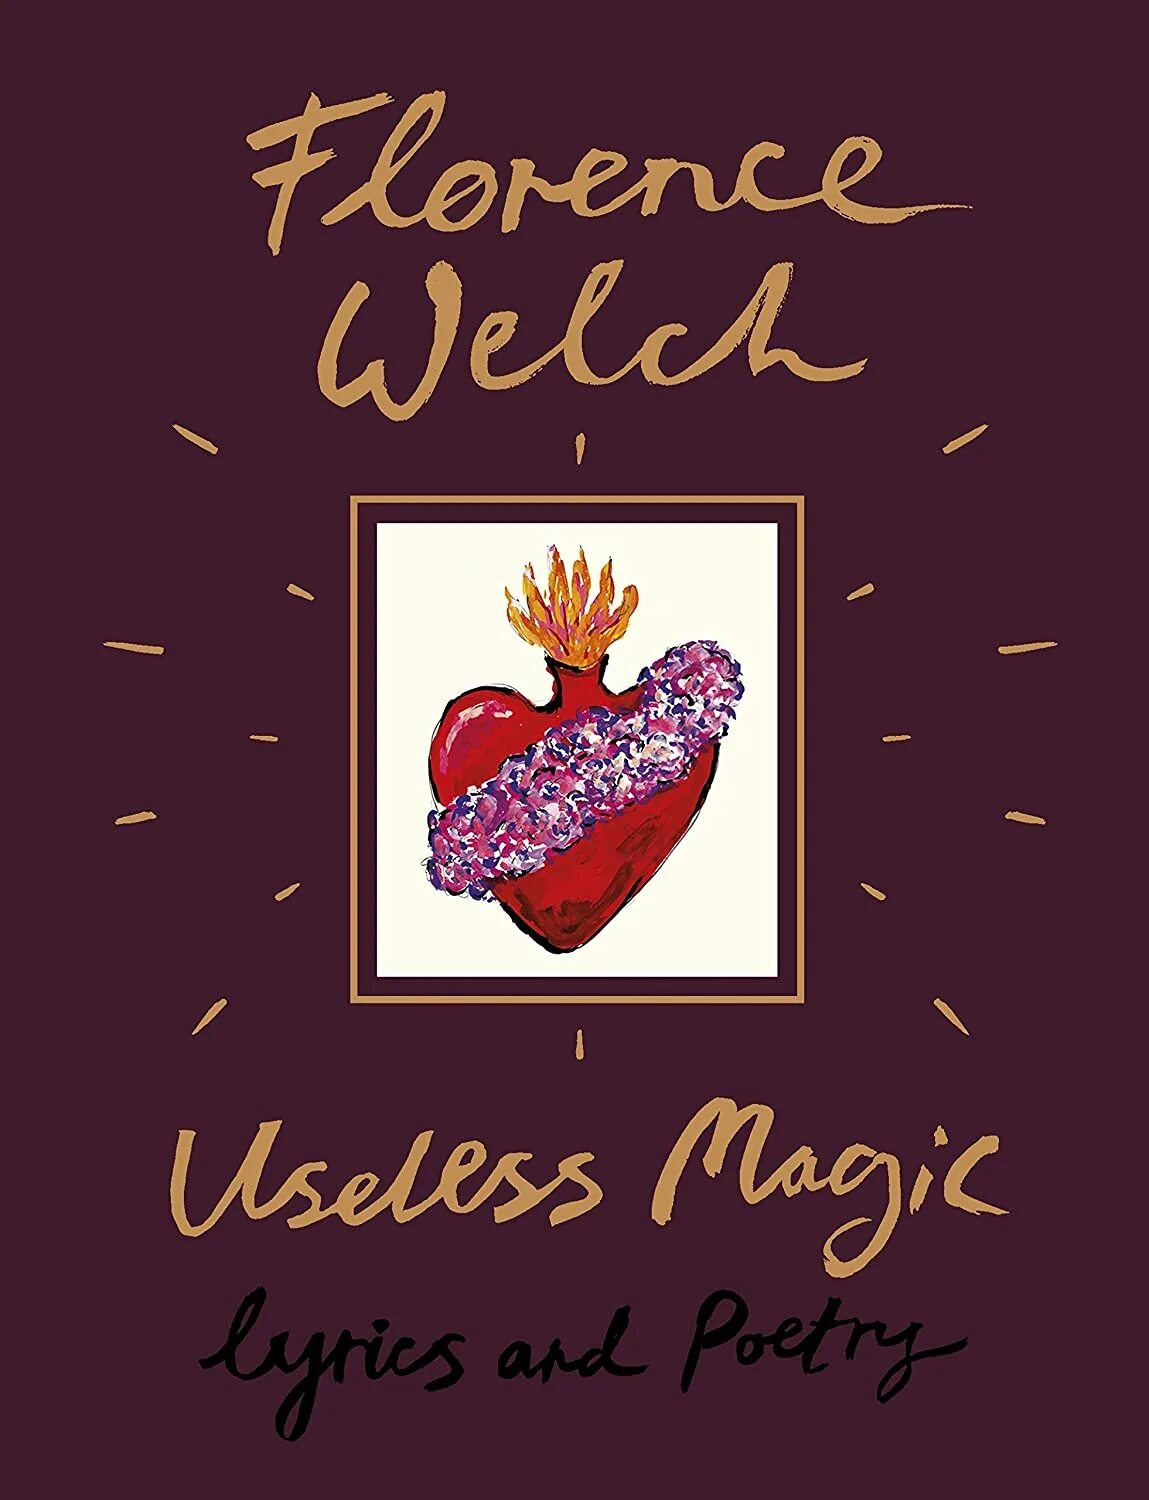 Magic lyrics. Флоренс Уэлч useless Magic. ‘Useless Magic’ by Florence Welch. Флоренс Уэлч – "бесполезная магия". Сборник стихов Флоренс Уэлш.